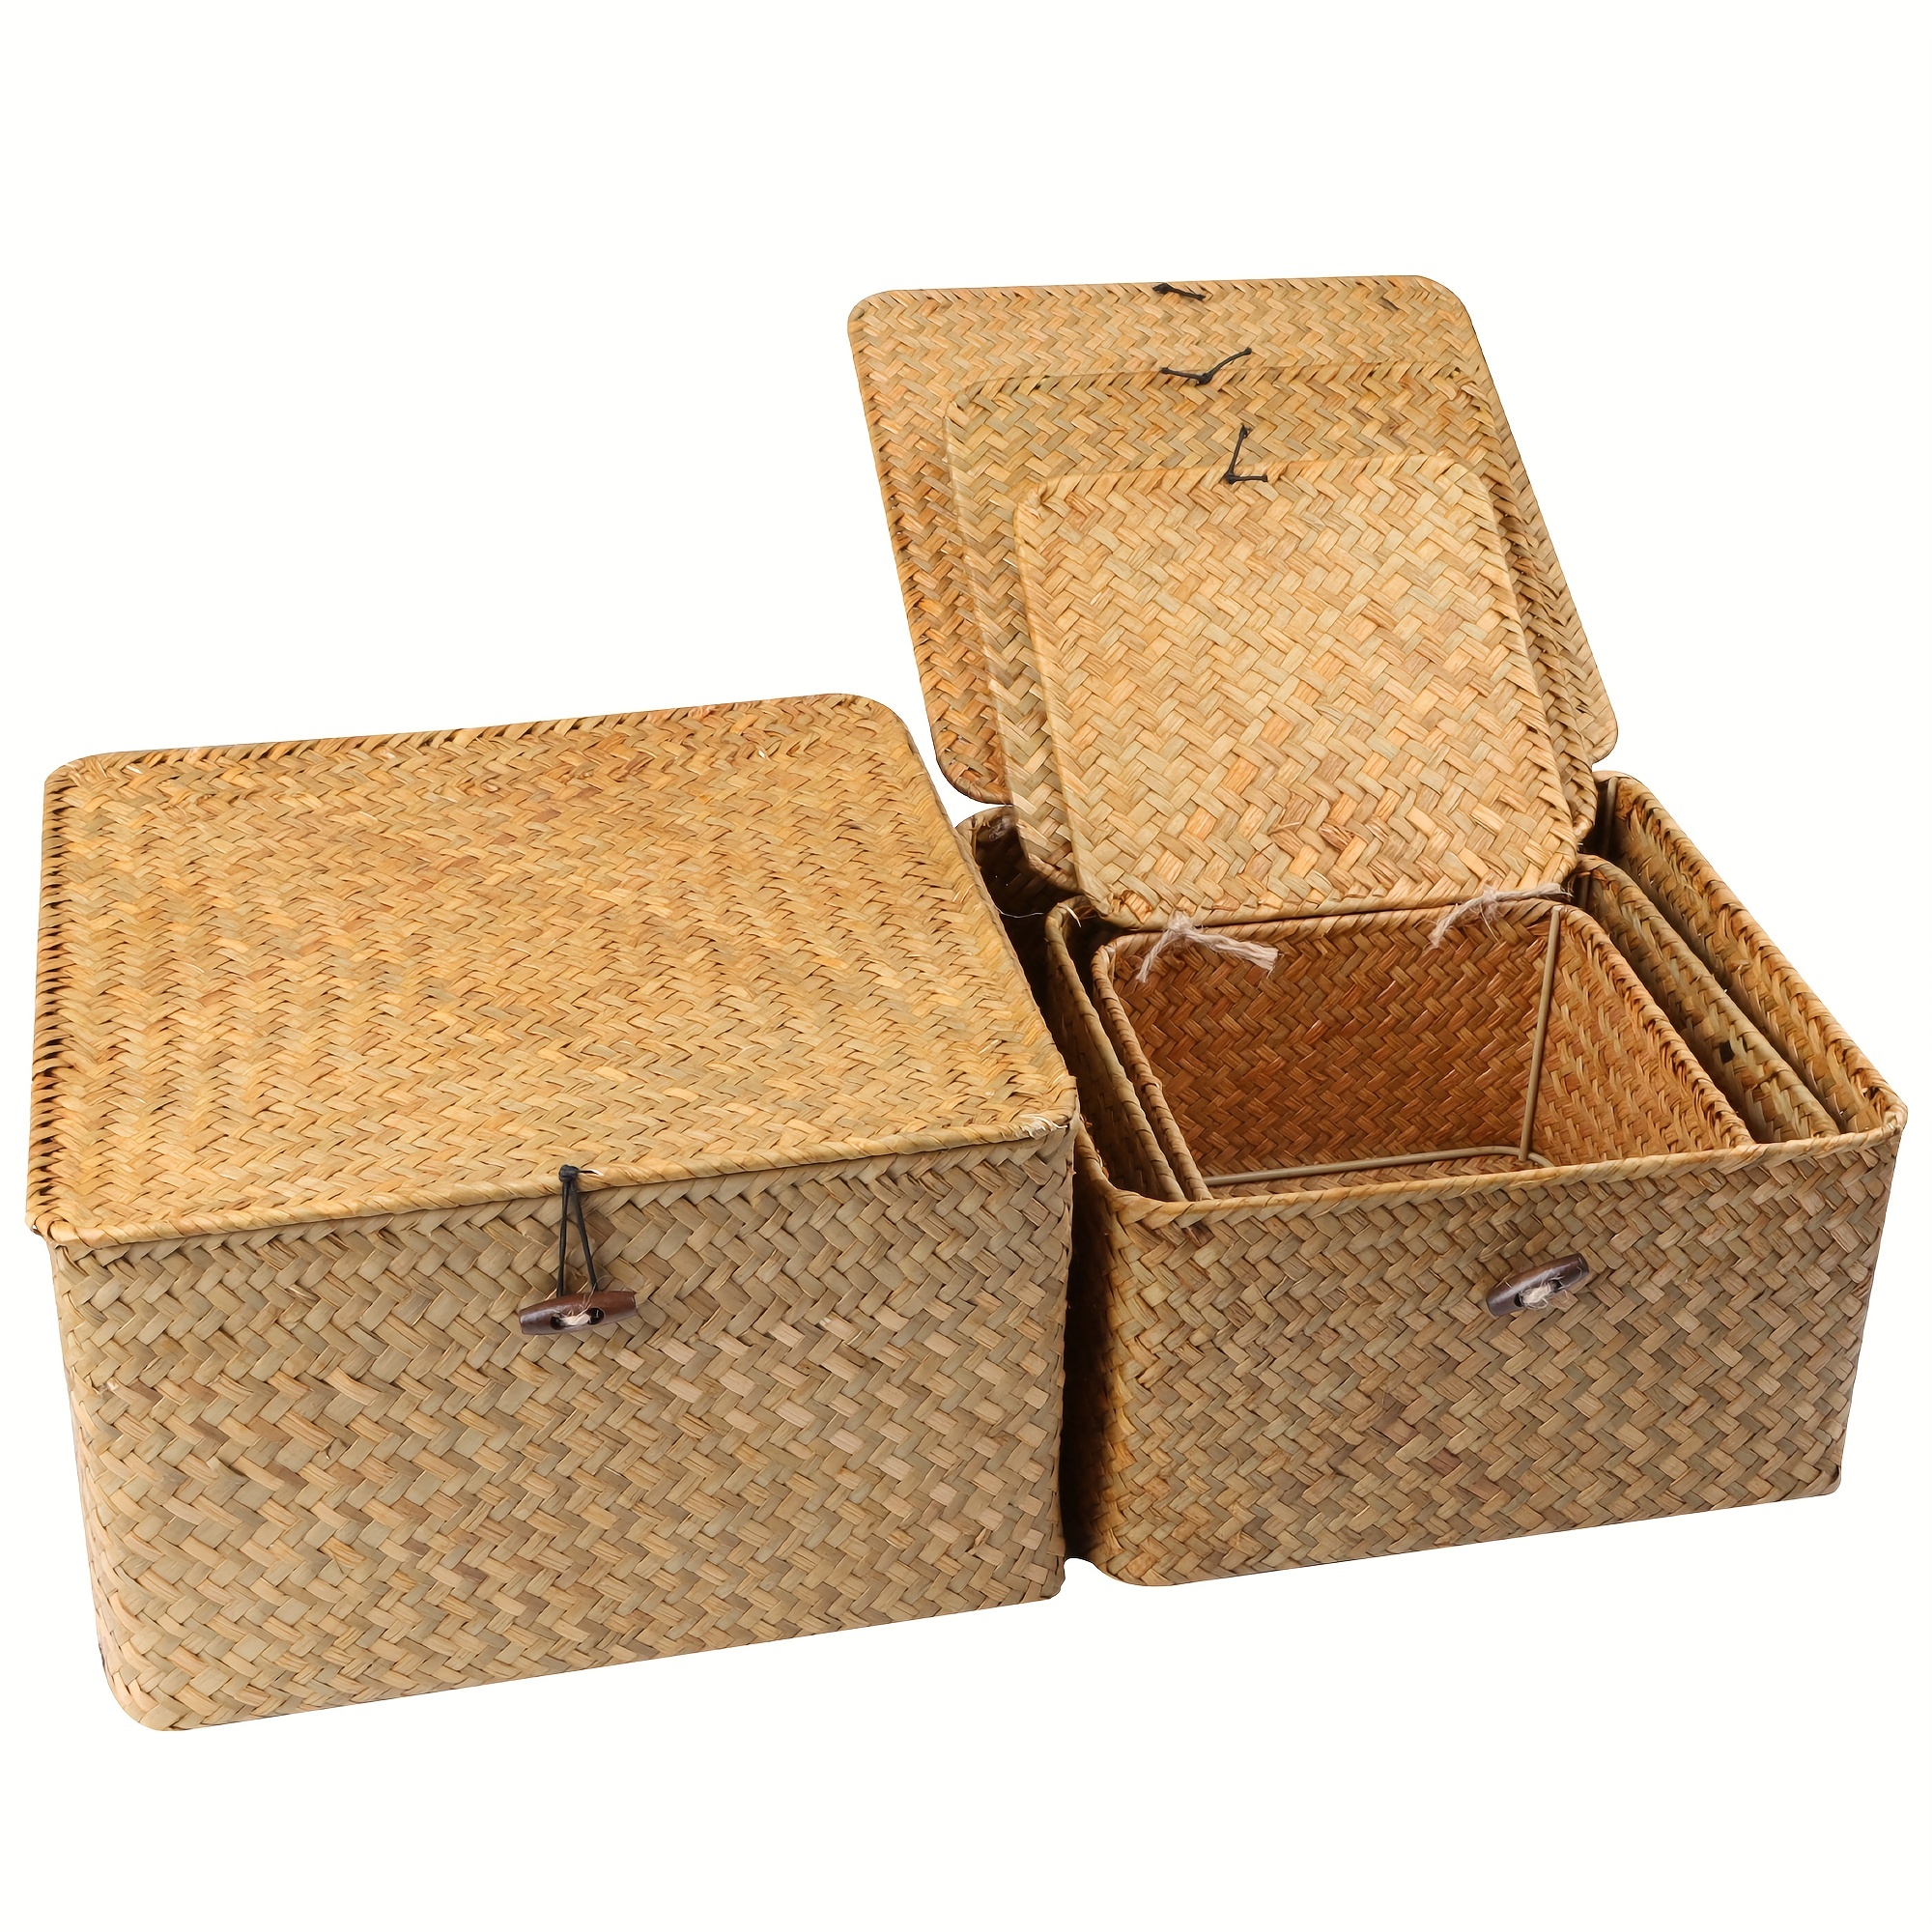 homyfort Woven Shelf Storage Tote Basket Bins Container, Storage